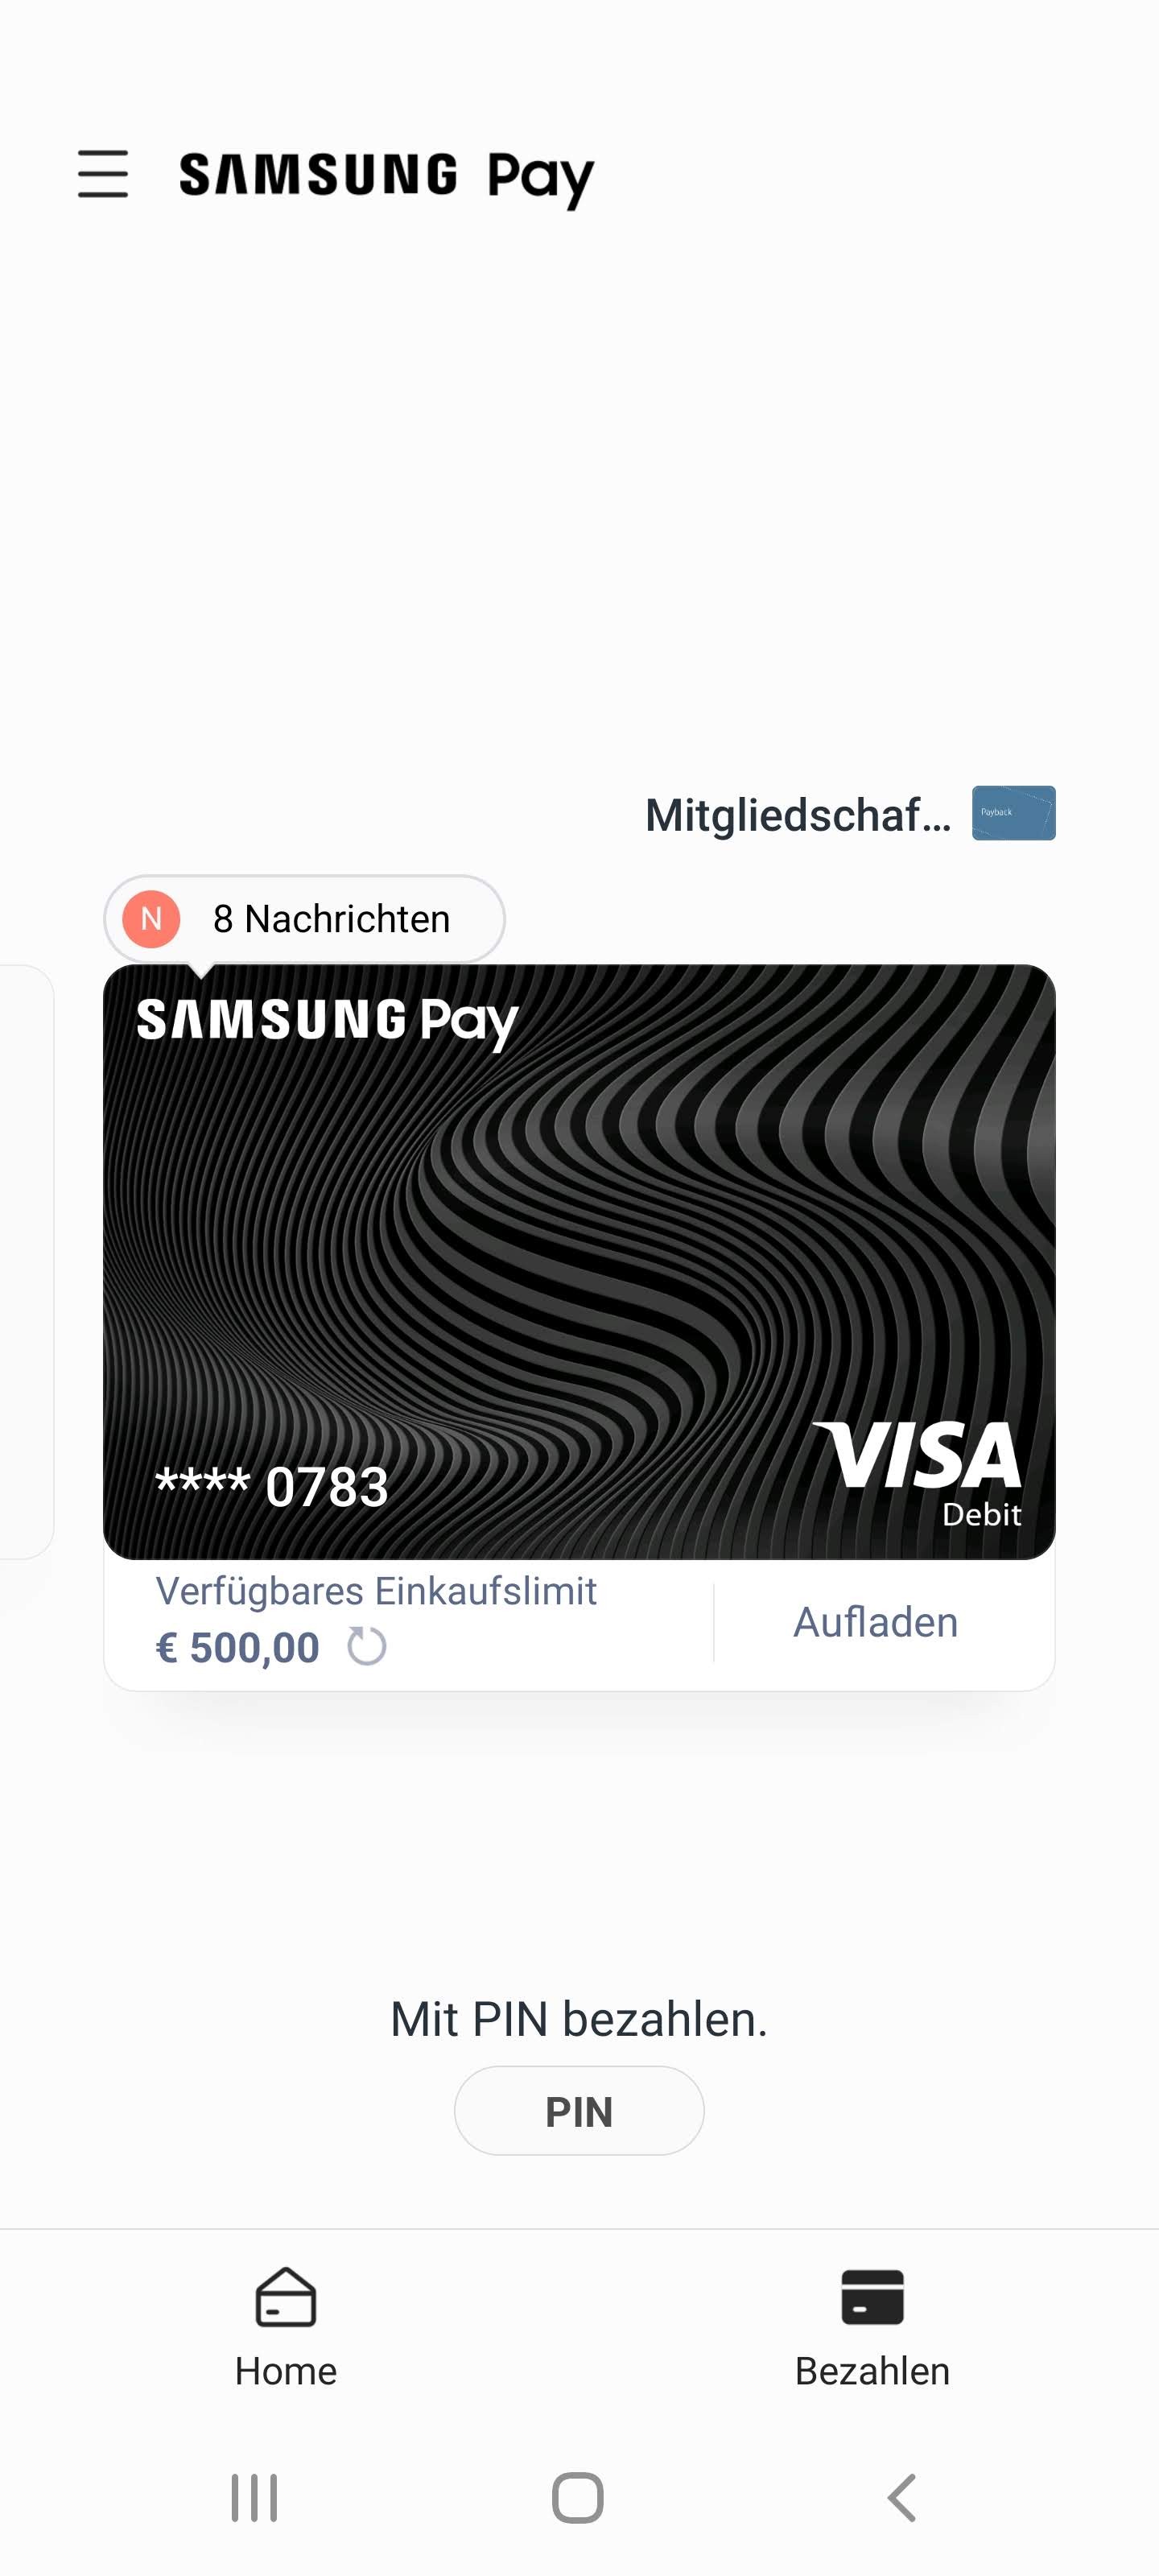 Samsung Pay funktioniert nur dank der Solarisbank, die eine digitale Debitkarte ausstellt. (Screenshot)